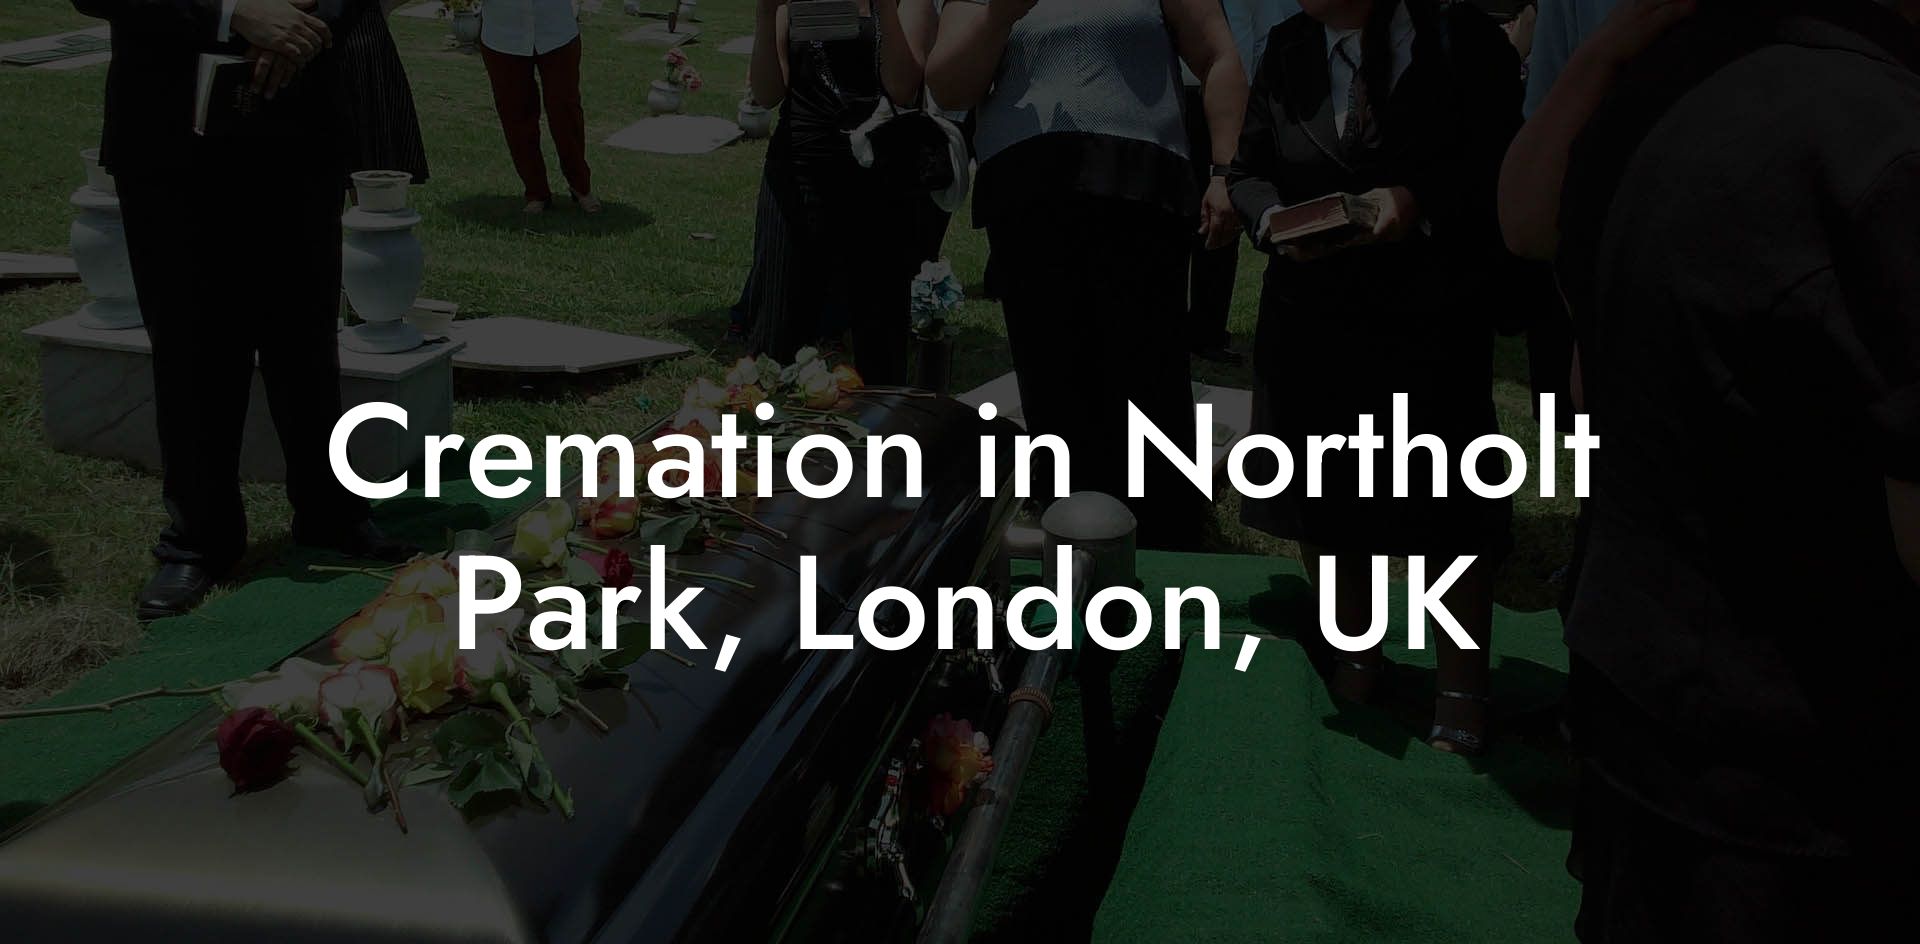 Cremation in Northolt Park, London, UK